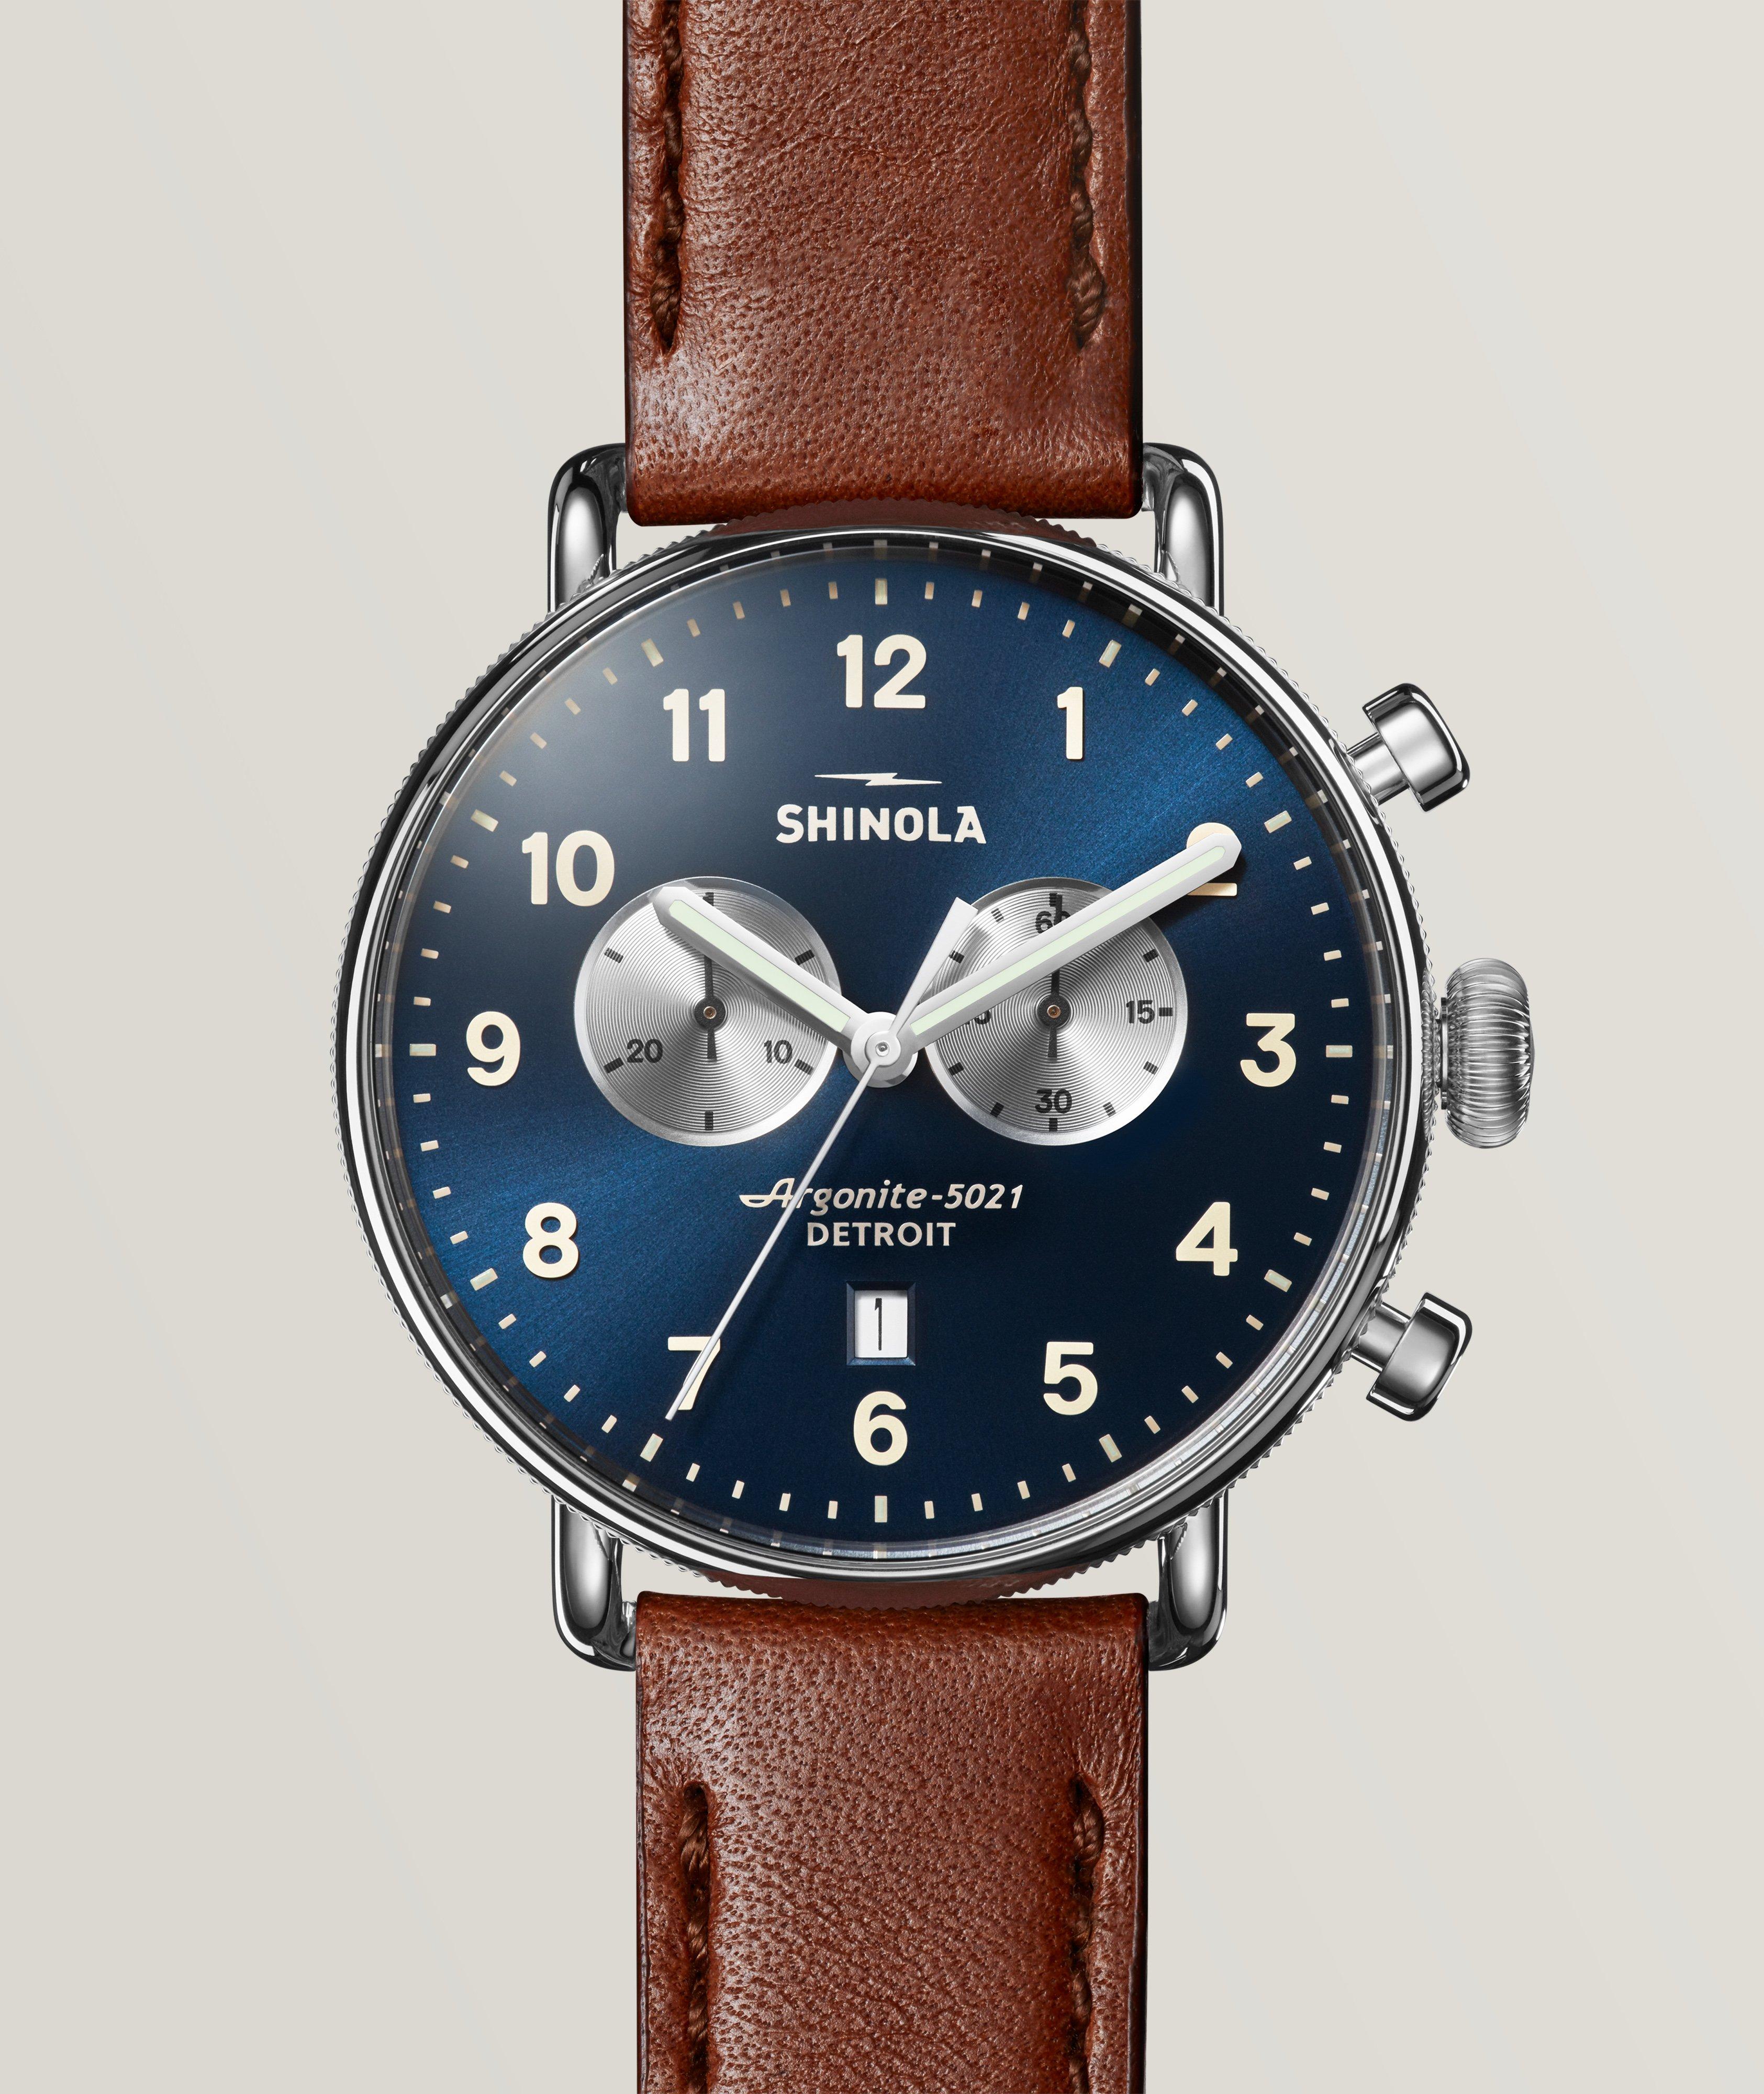 Montre-chronographe Canfield avec bracelet en cuir image 0